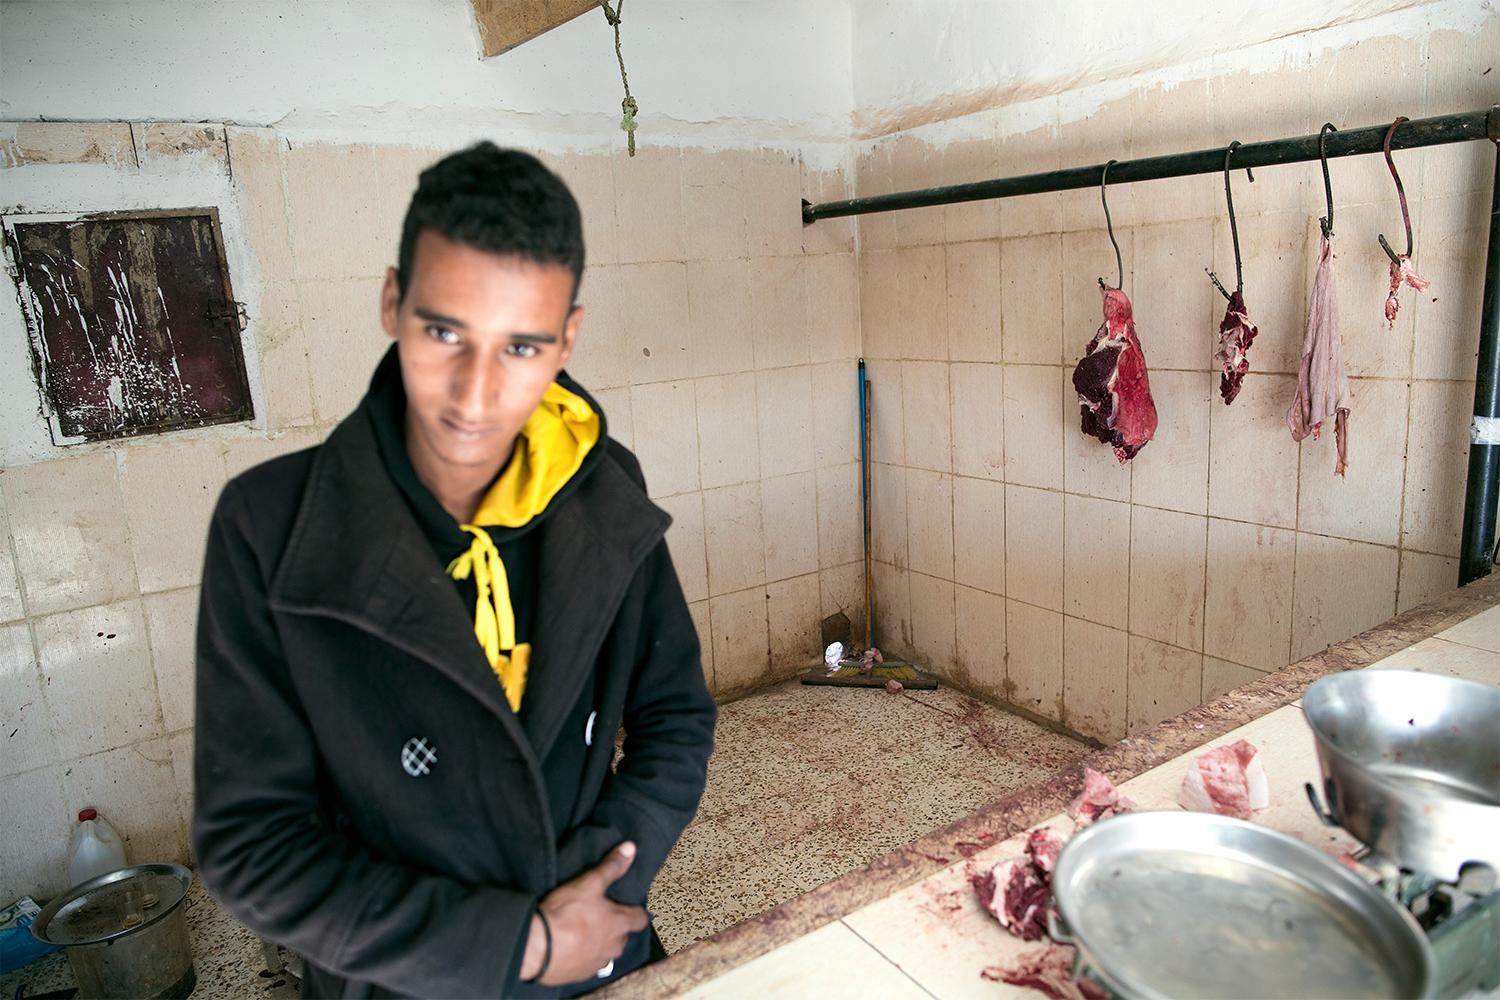 Lafde Mostafe Abdesalem, 19 år, säljer kött på en marknad i flyktinglägret Smara. ”Vi vill gå ut i krig igen, om fredliga medel inte fungerar får man byta taktik”. Johan Persson